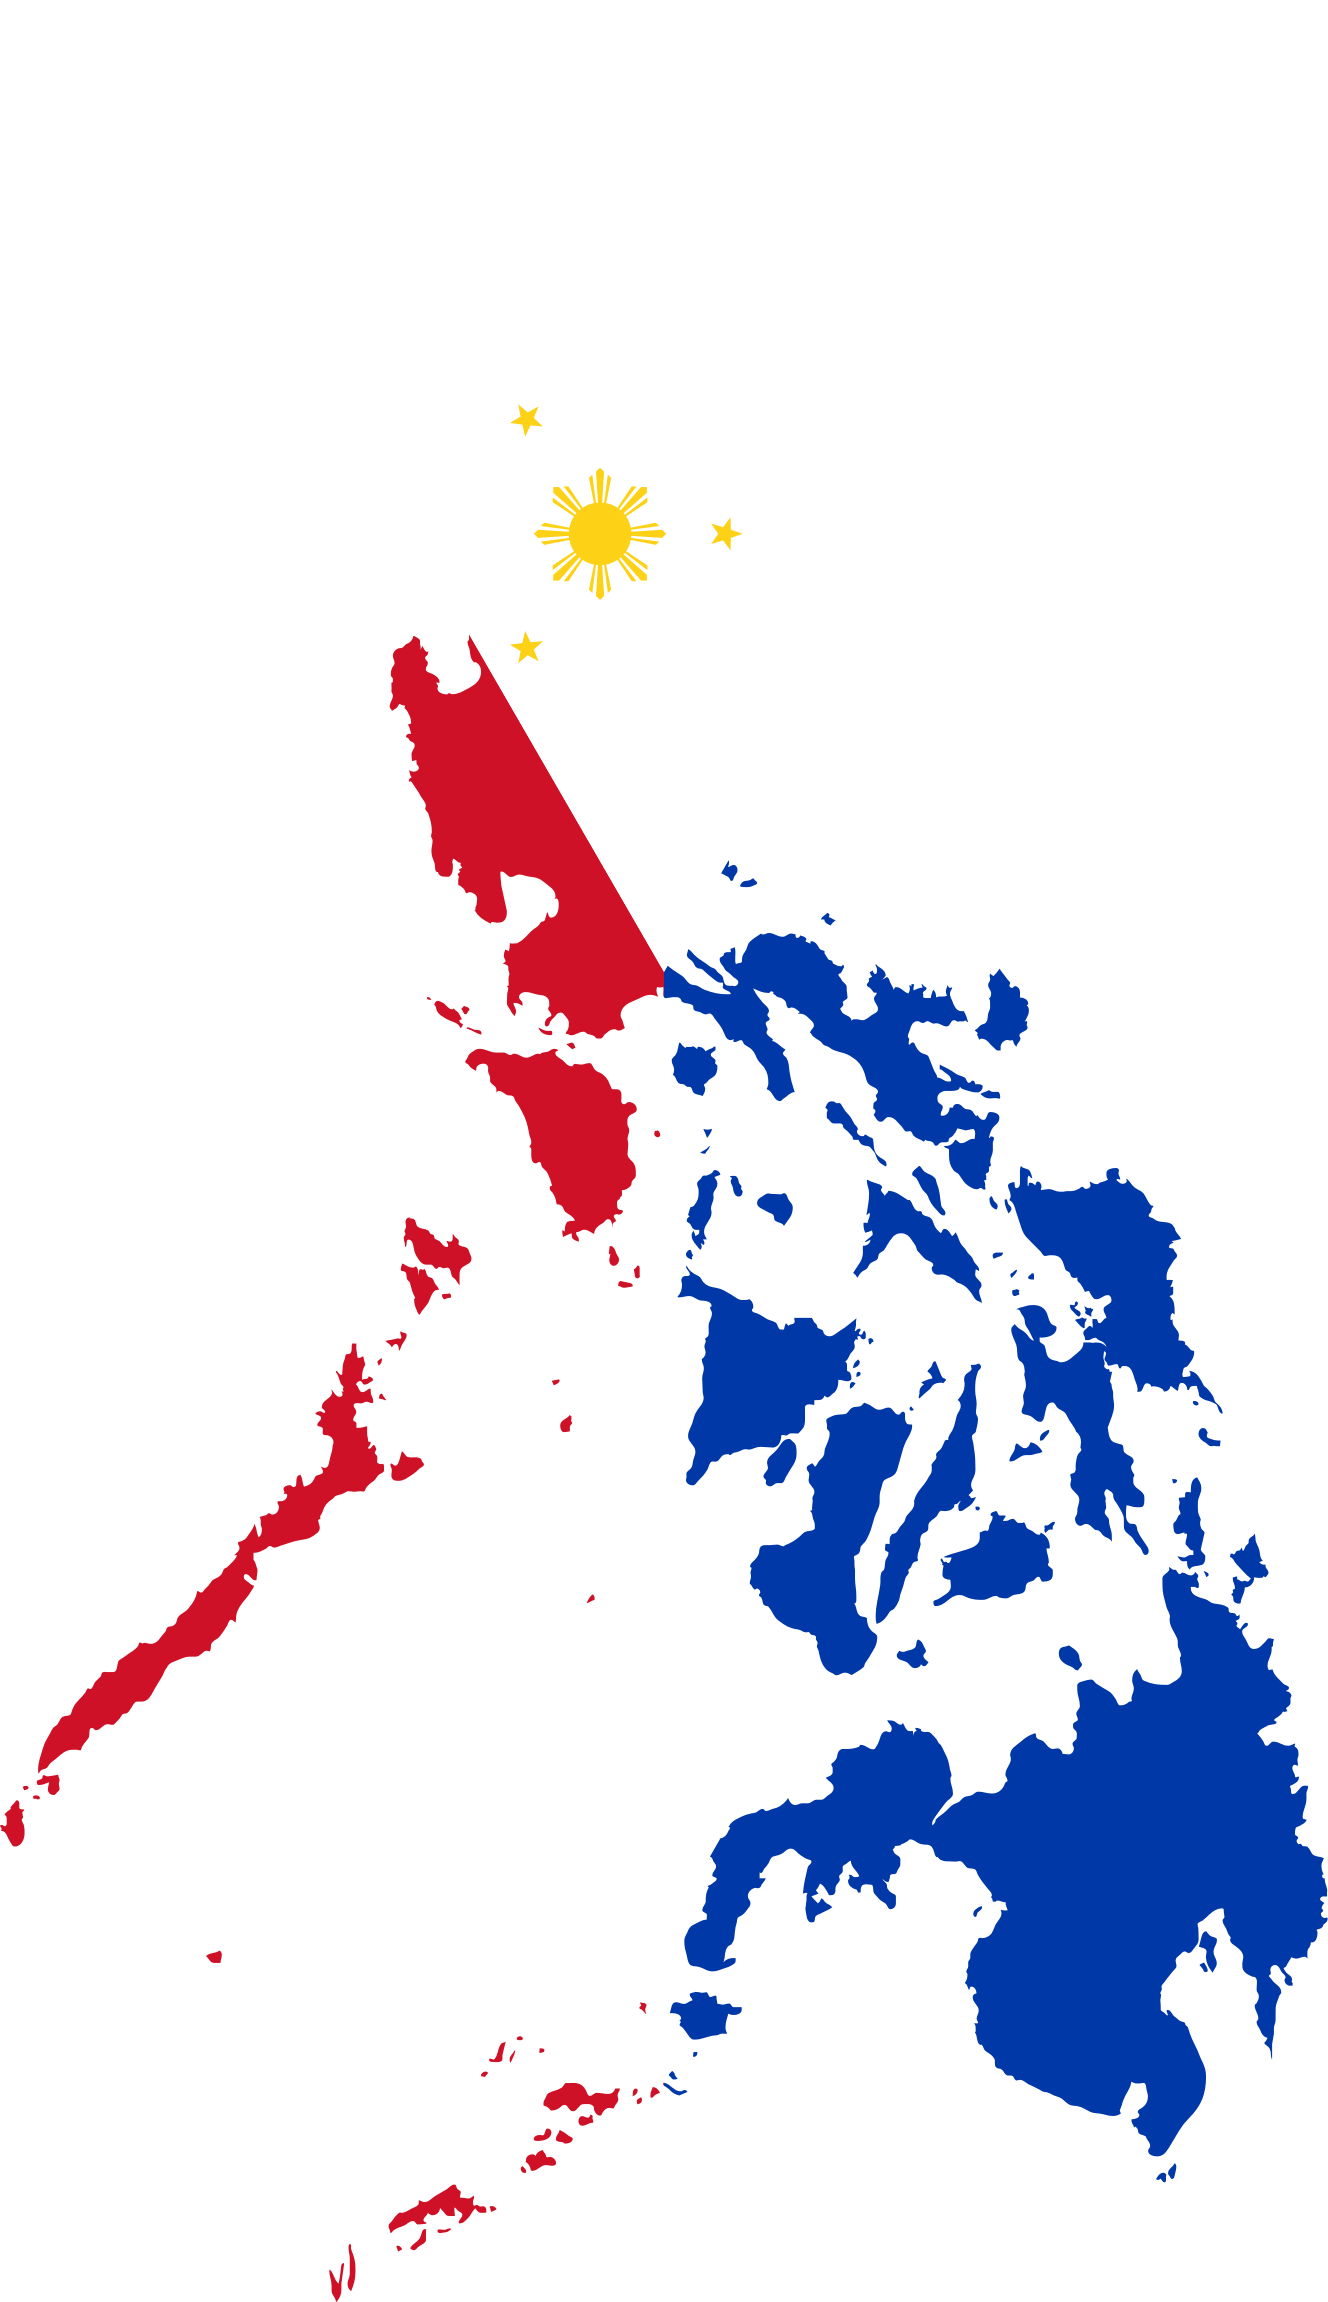 Philippine Map Design